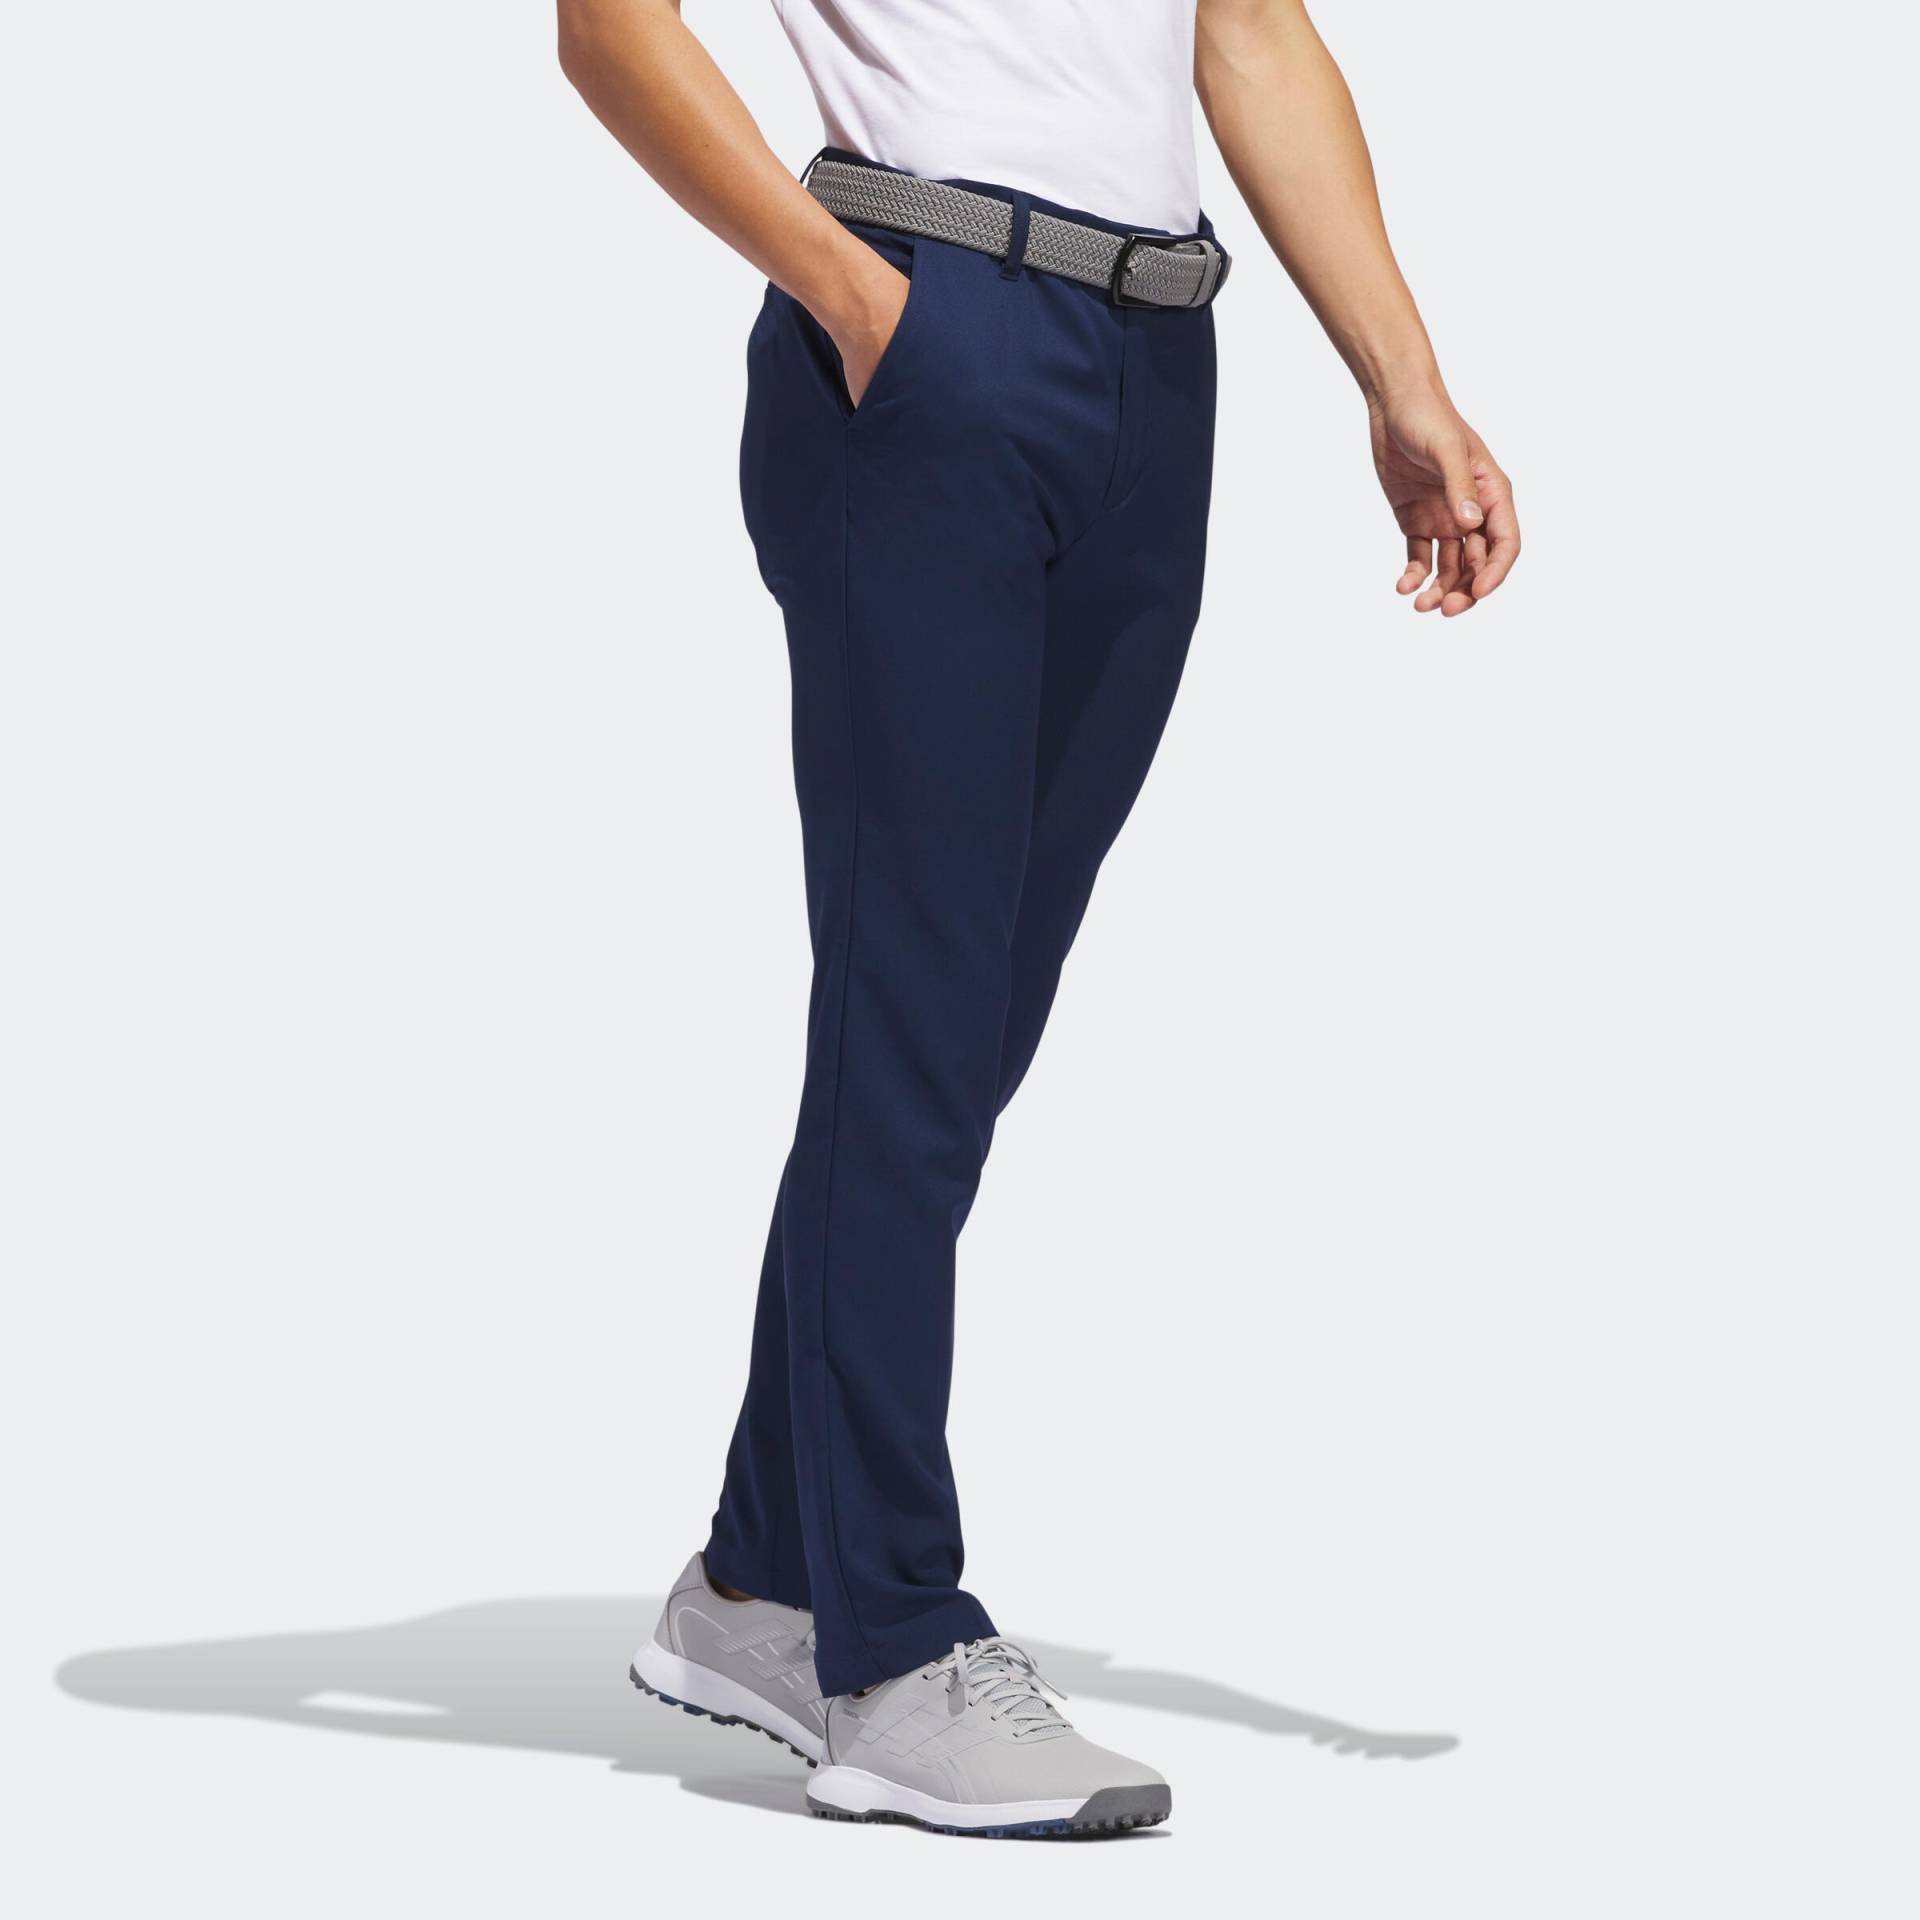 Herren Golf Hose - ADIDAS marineblau von Adidas